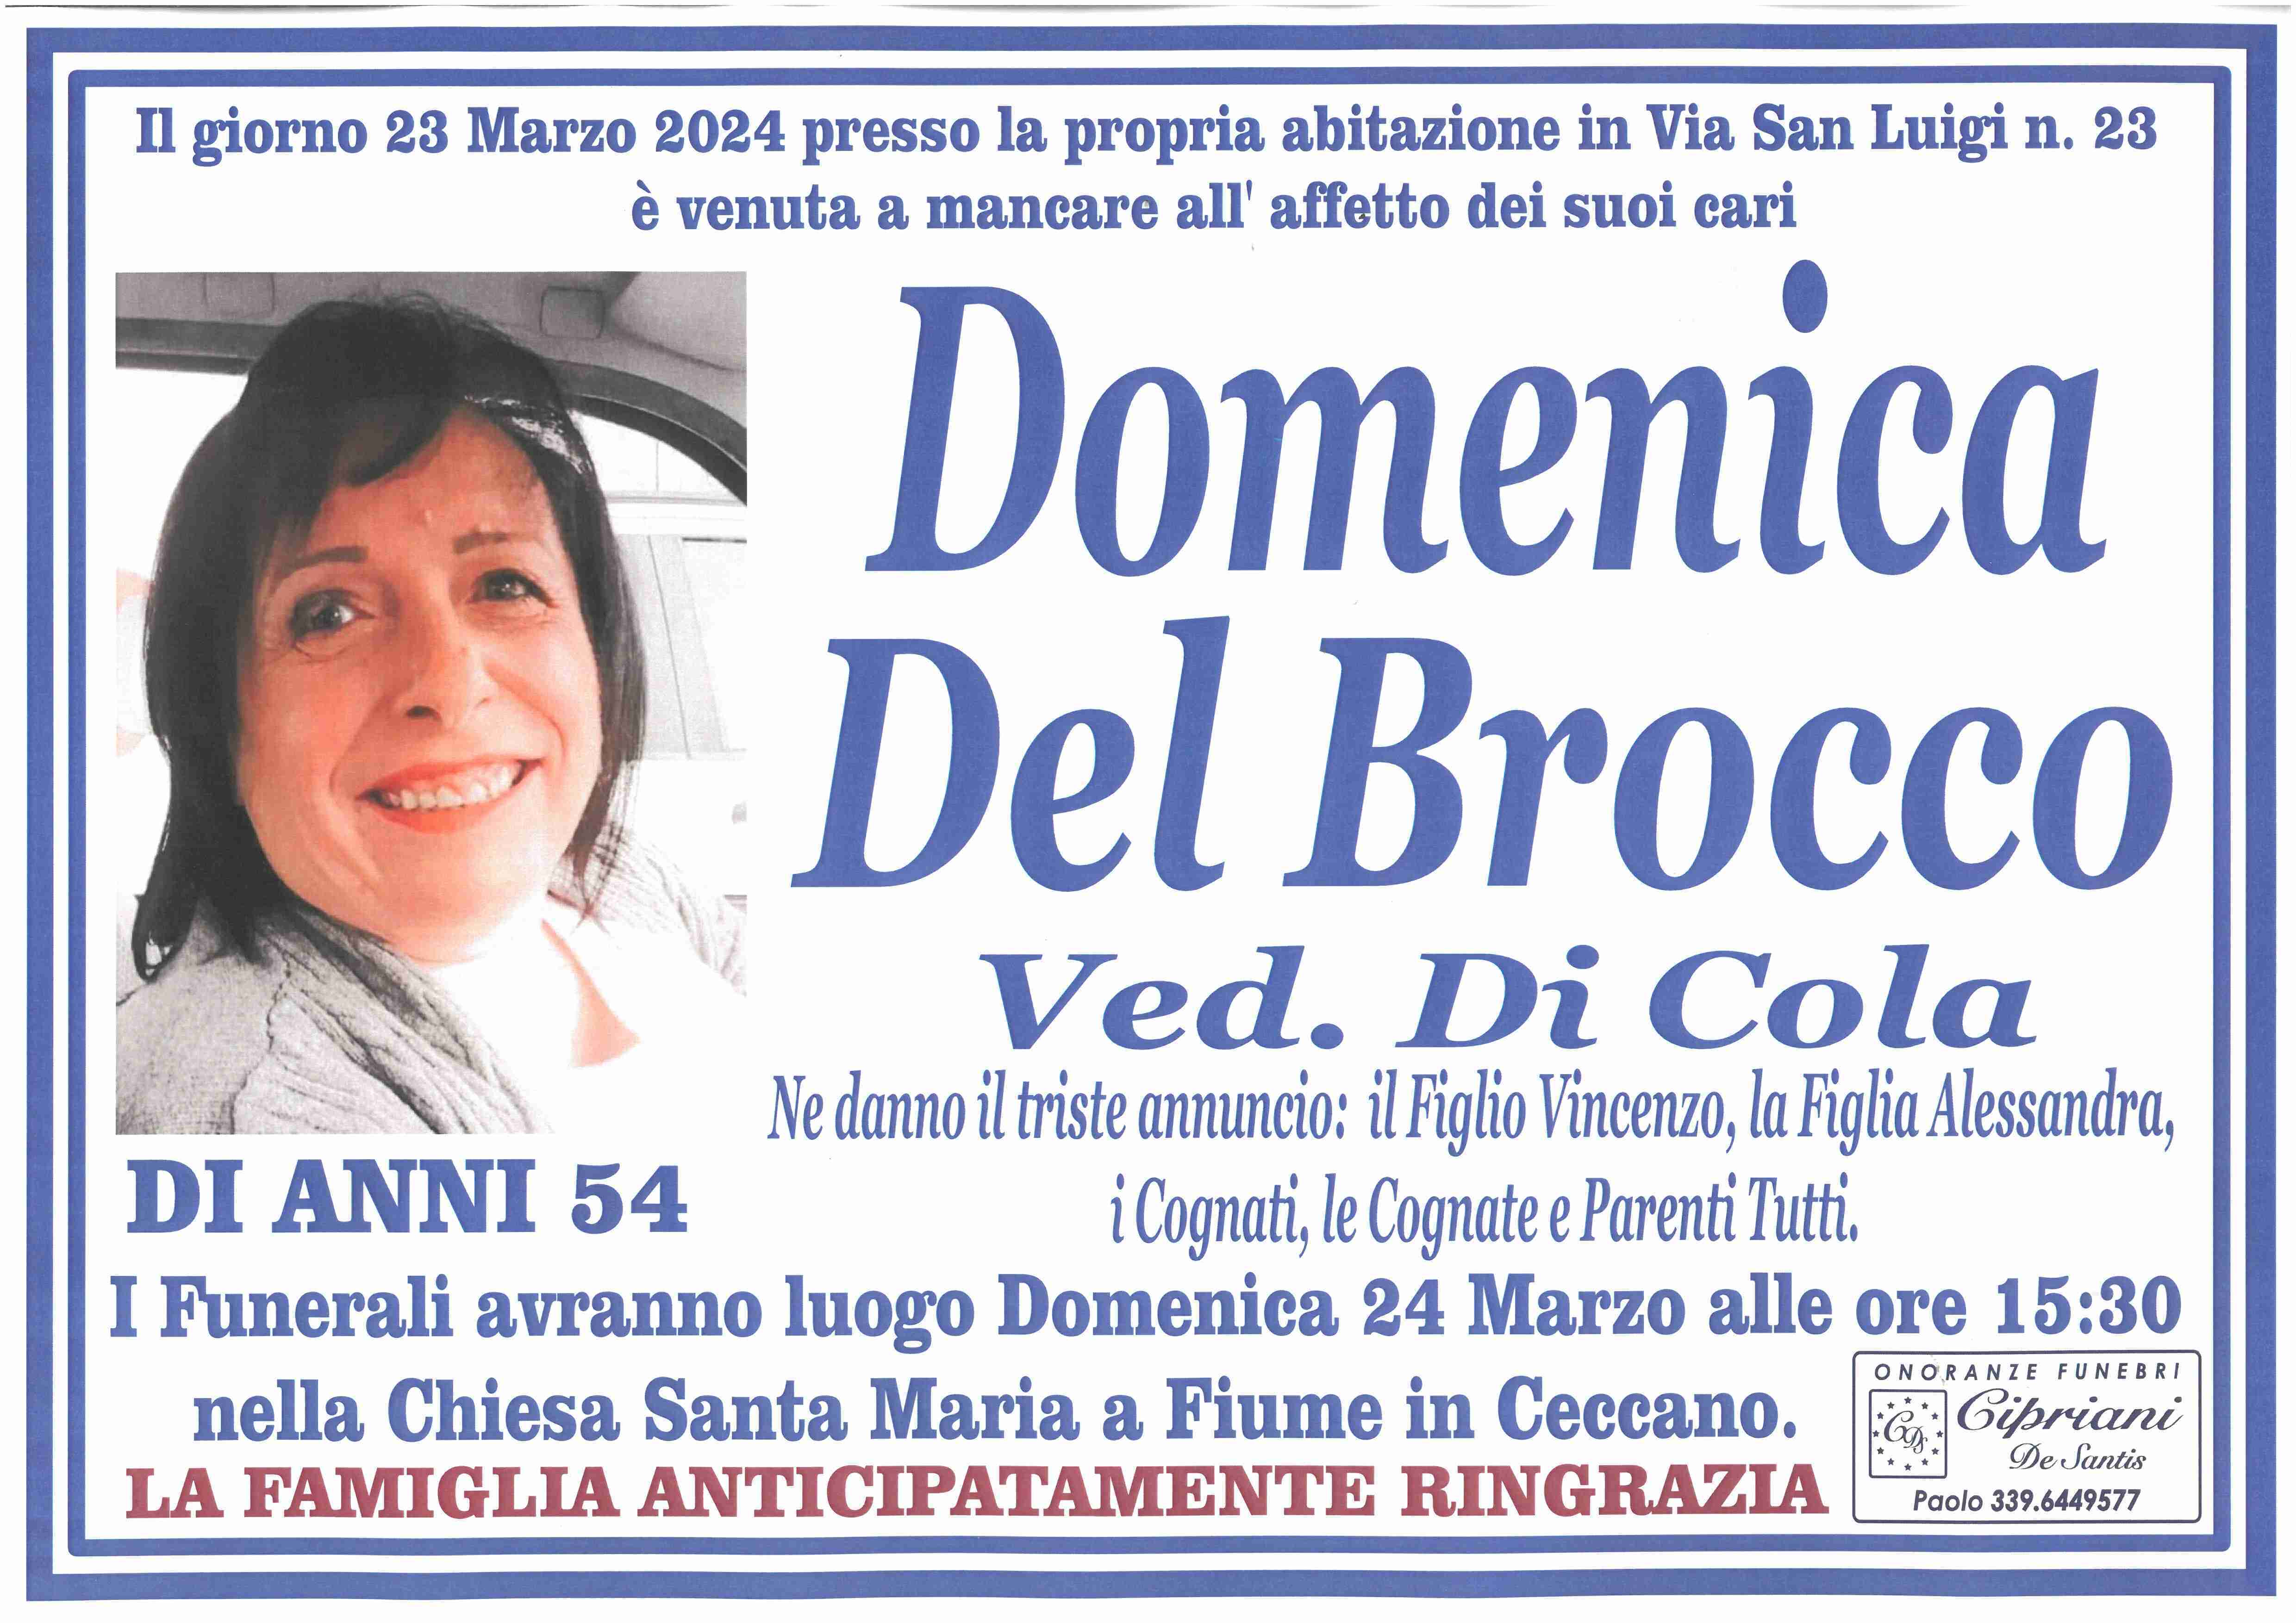 Domenica Del Brocco